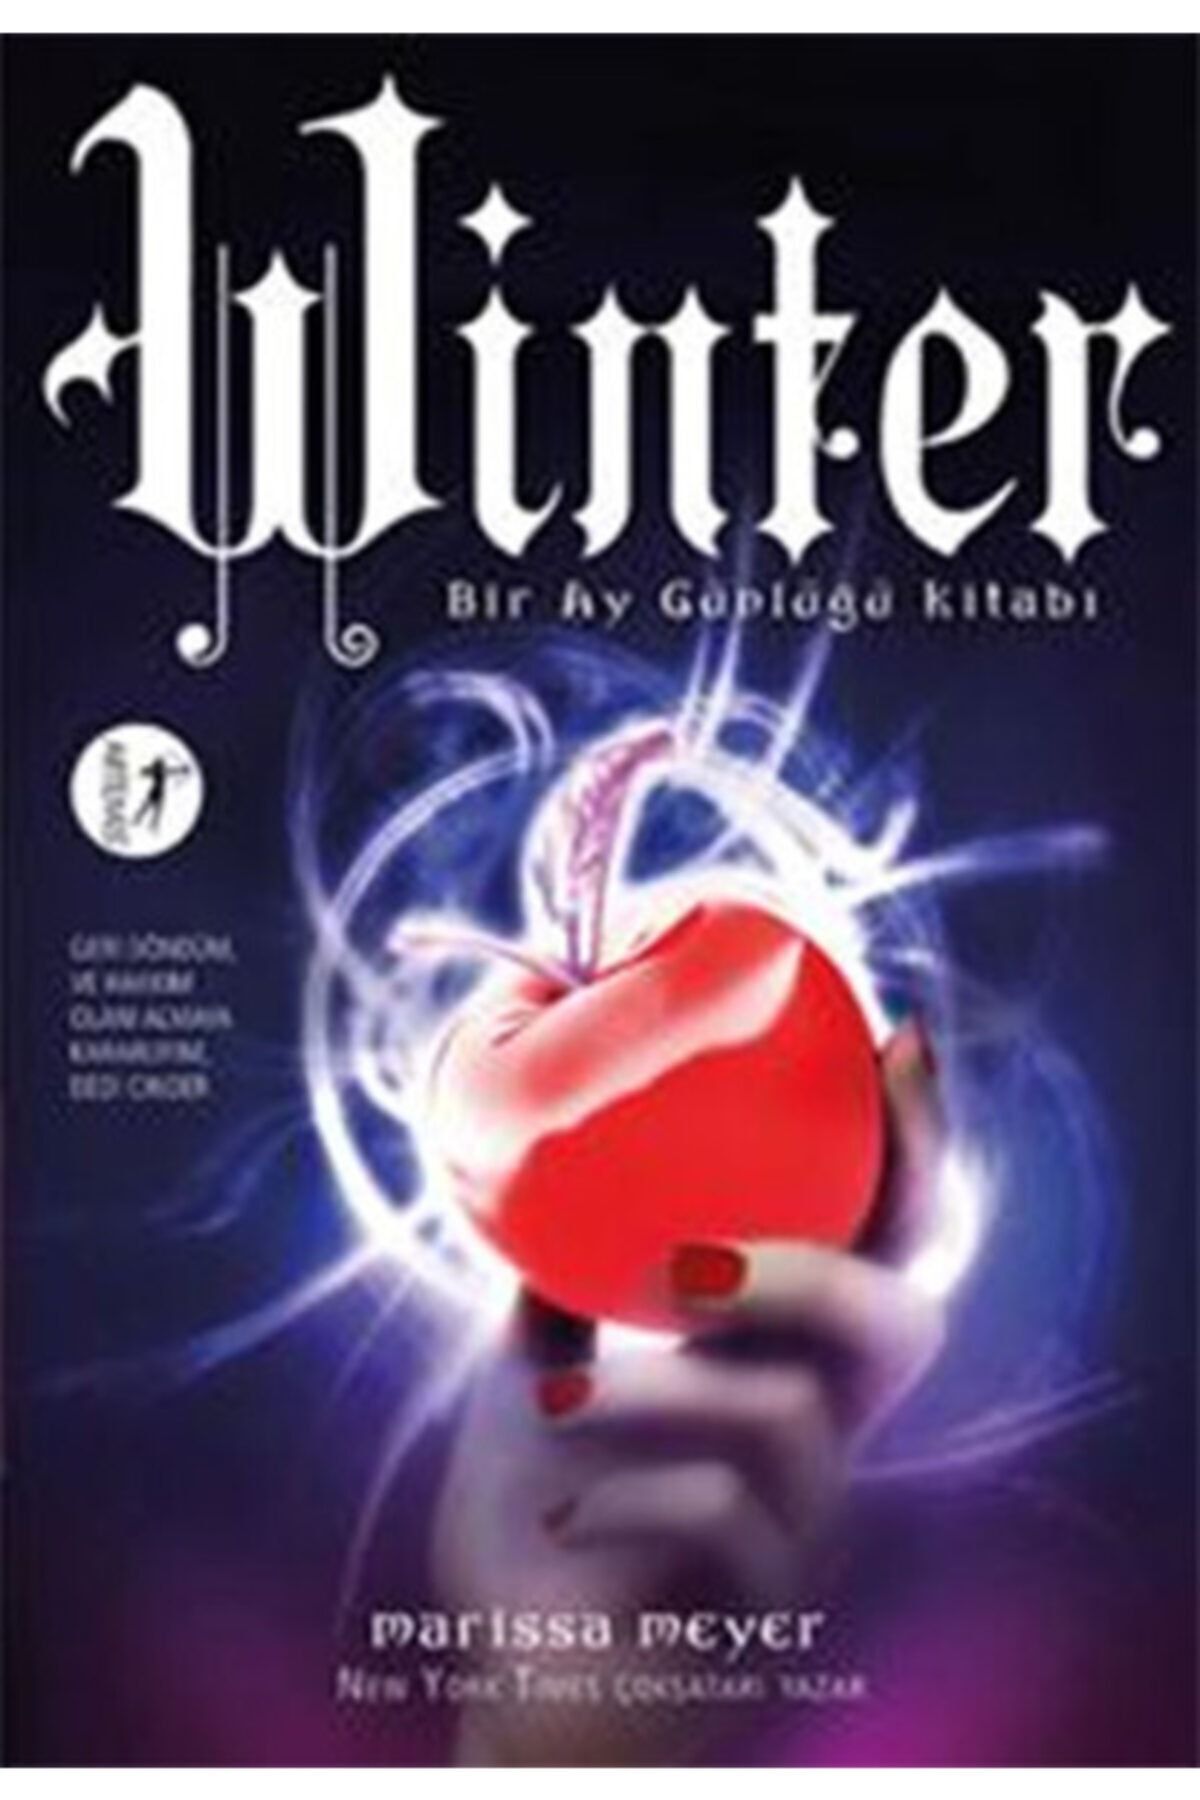 Artemis Yayınları Winter - Bir Ay Günlüğü Kitabı, Marissa Meyer, , Winter - Bir Ay Günlüğü Kitabı Kit